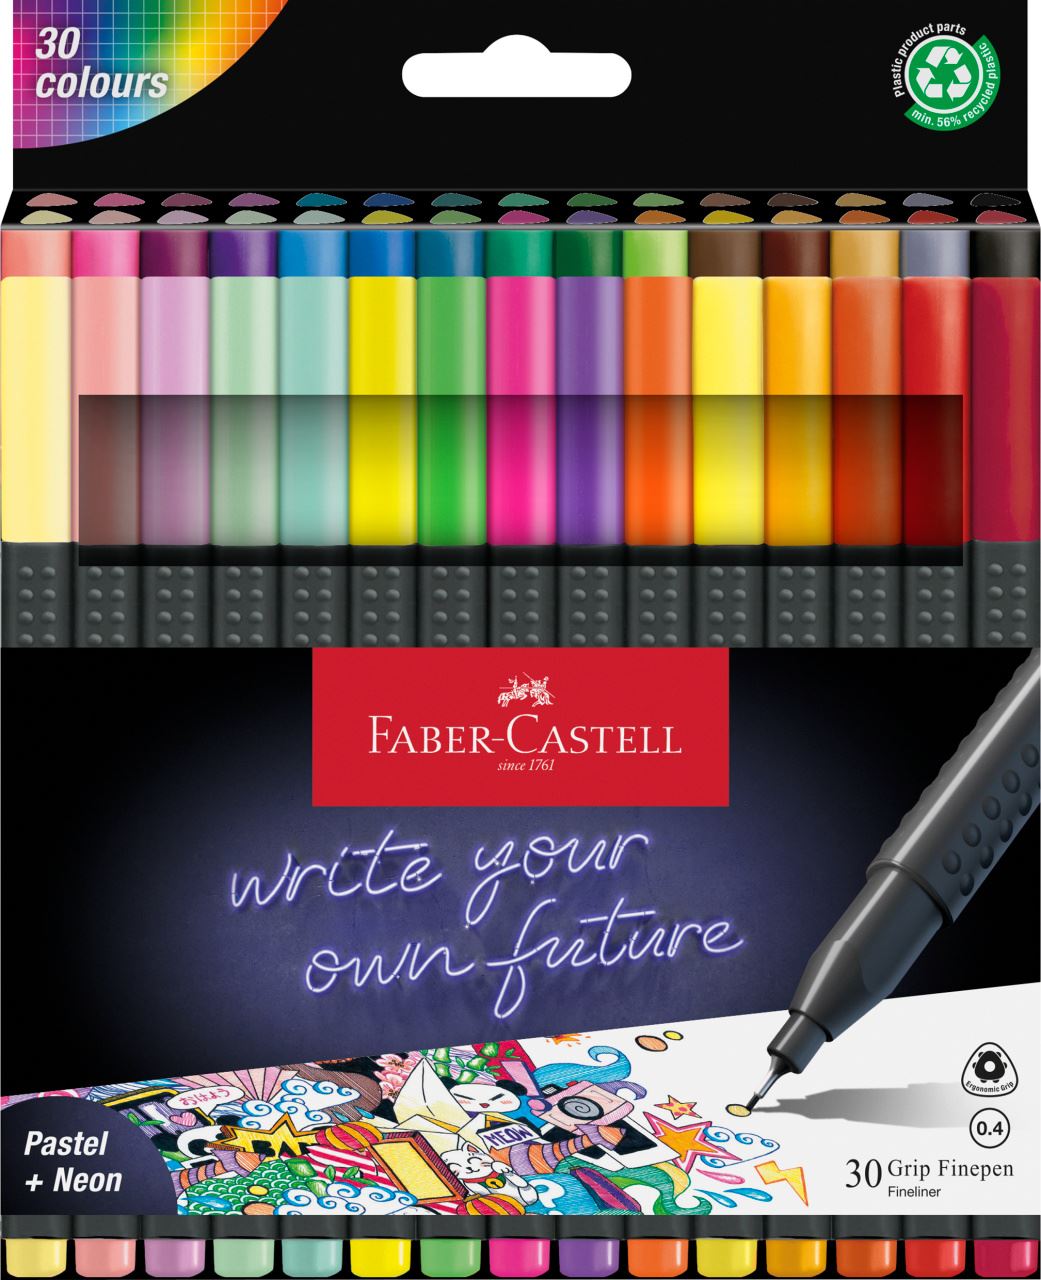 Faber-Castell - Grip Finepen étui carton x30